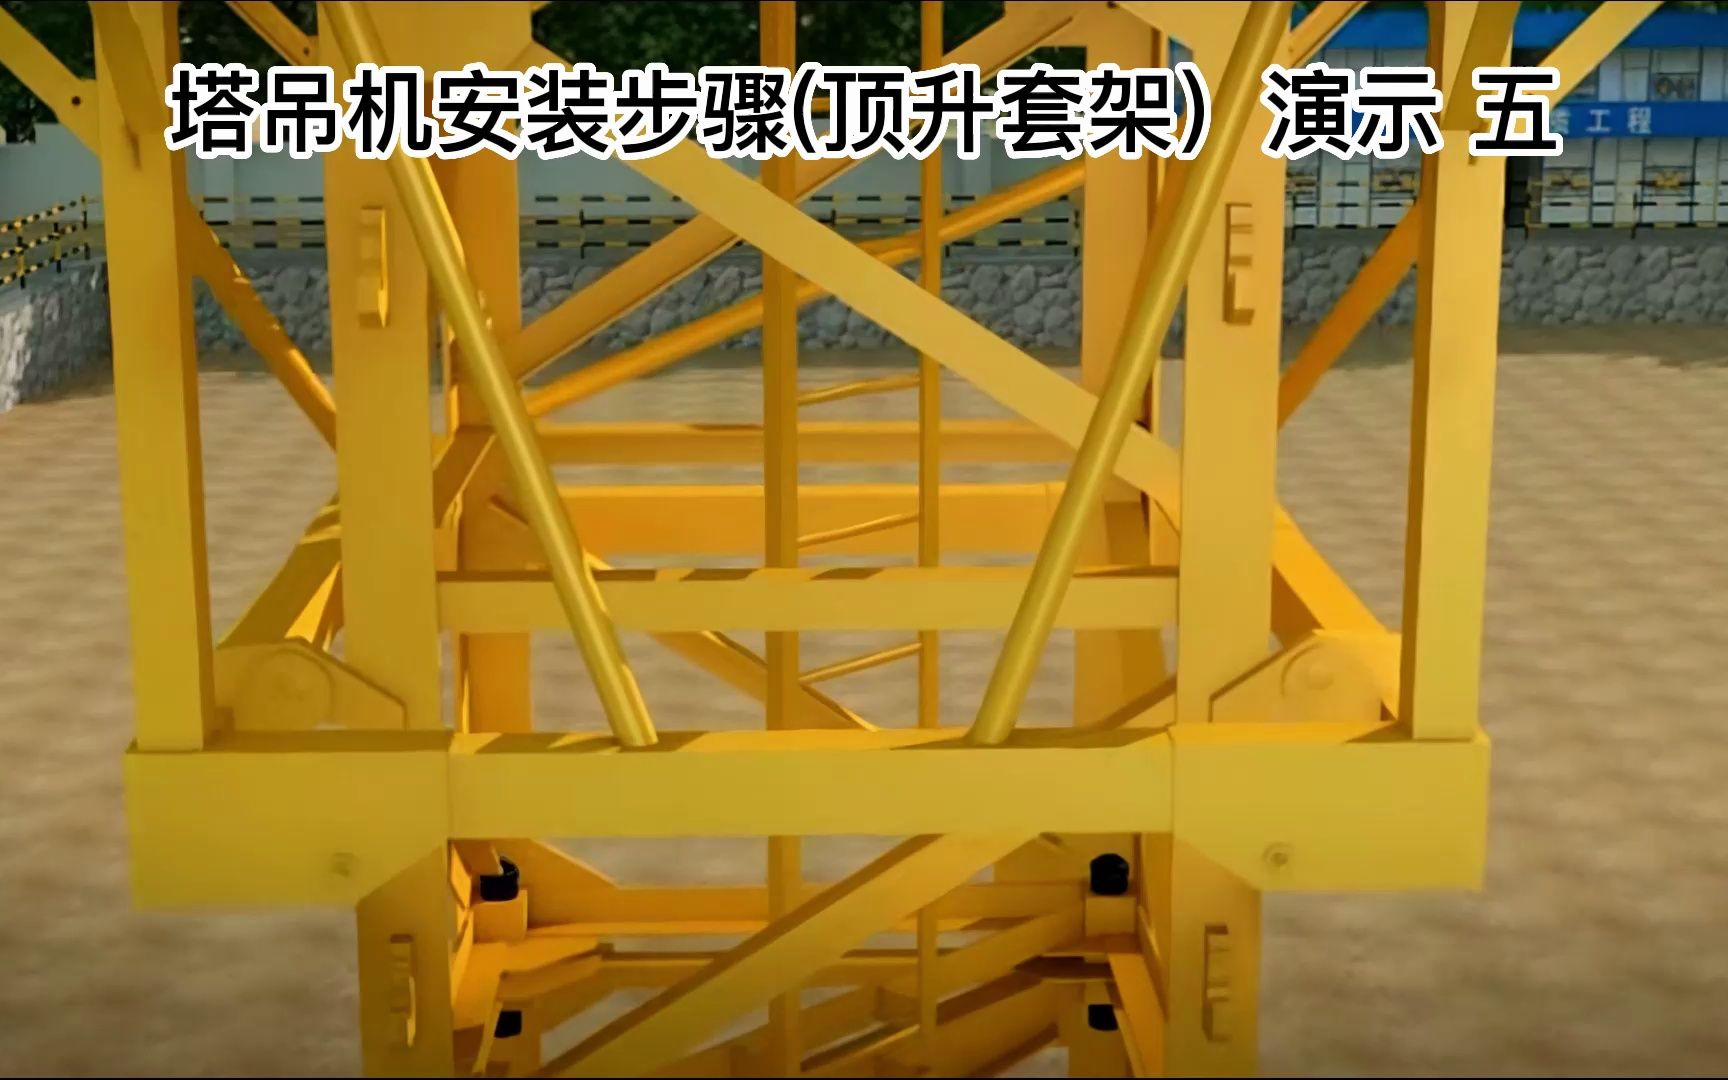 塔吊机安装步骤(顶升套架)演示#工程机械#工程人#包工头